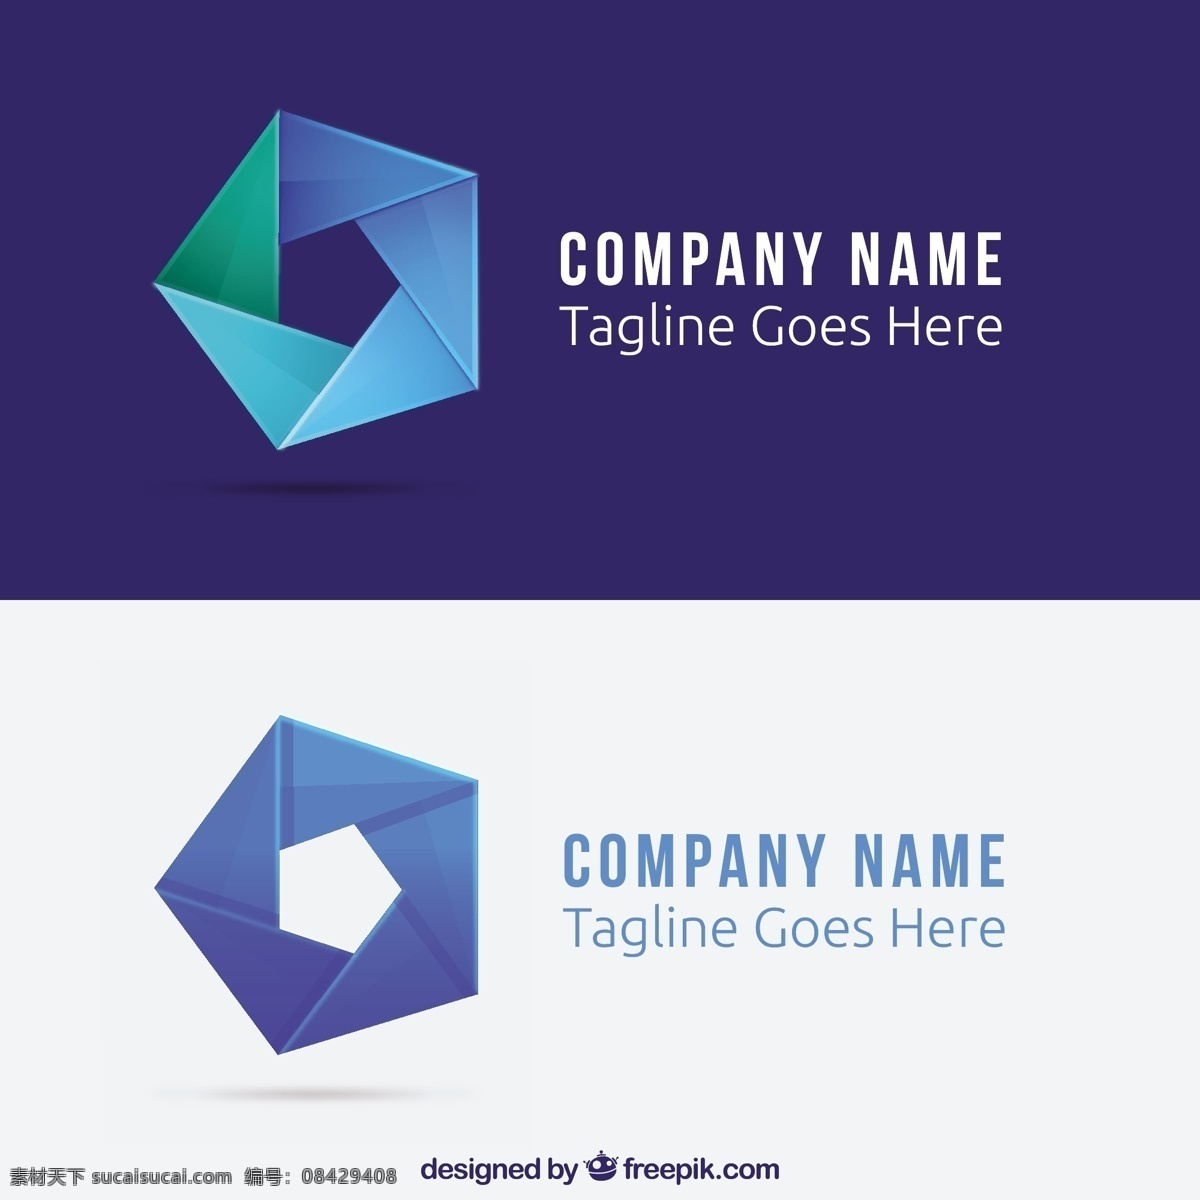 五边形 商业 标志 标识 几何 蓝色 形状 企业 公司 品牌 身份 业务 徽标